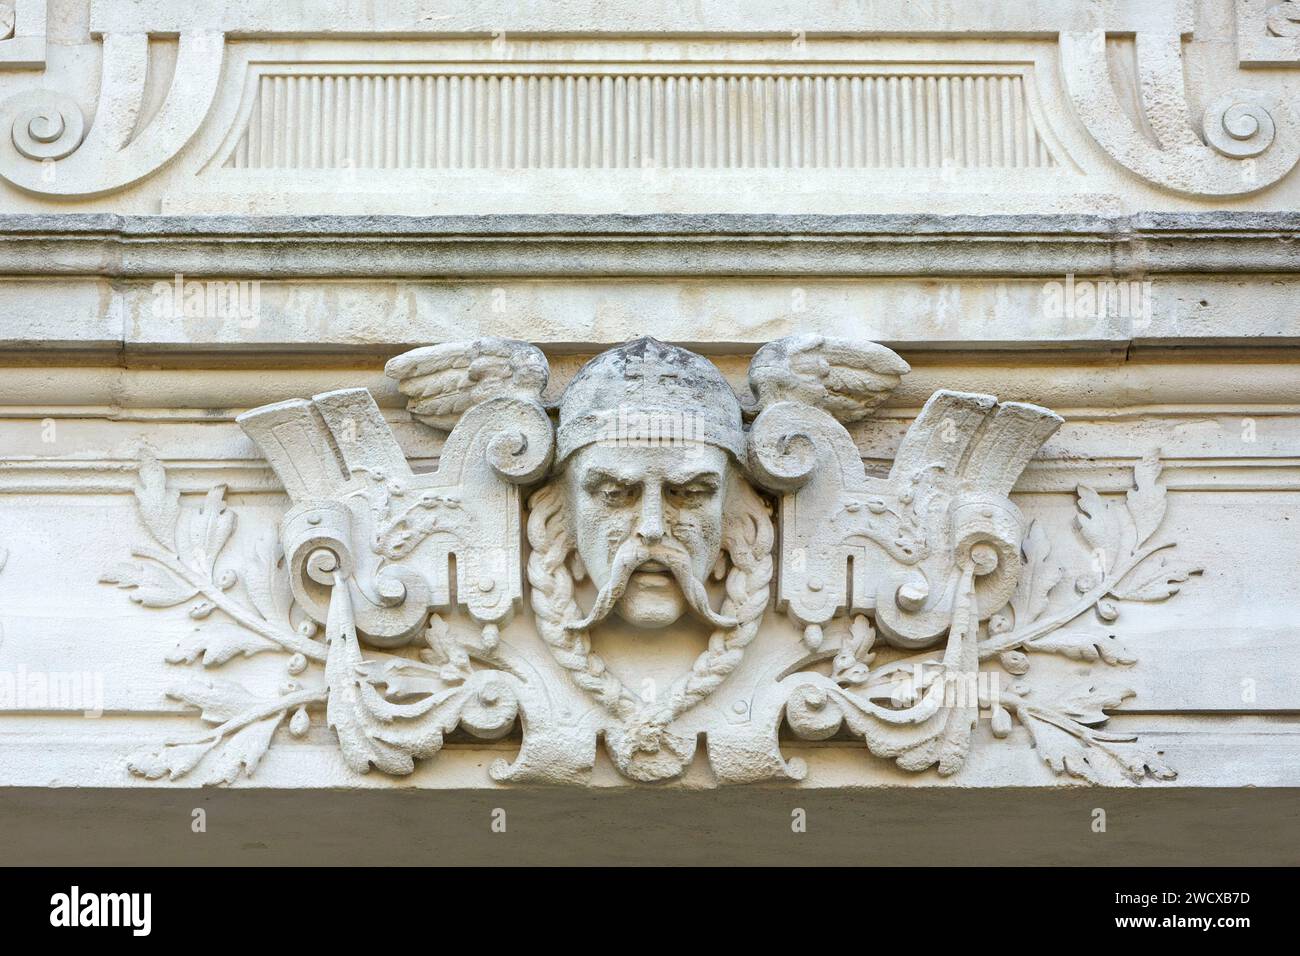 Francia, Meurthe et Moselle, Nancy, dettaglio della scultura che rappresenta il volto di un guerriero che assomiglia a Vercingetorix sulla facciata di un palazzo situato in Rue de Rigny Foto Stock